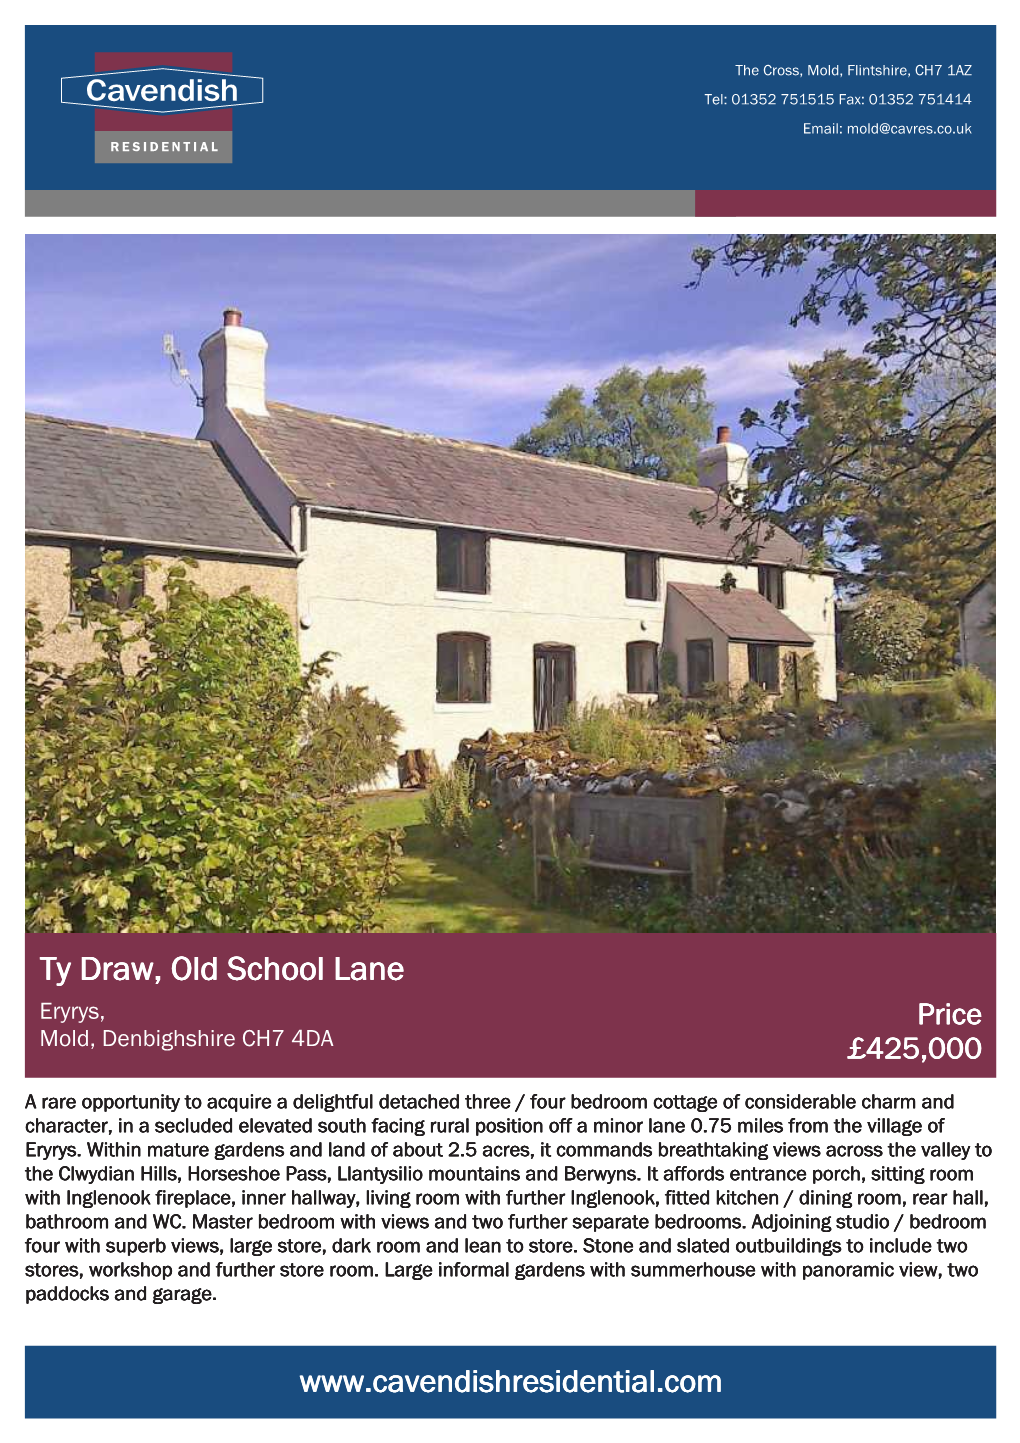 Ty Draw, Old School Lane Eryrys, Price Mold, Denbighshire CH7 4DA £425,000